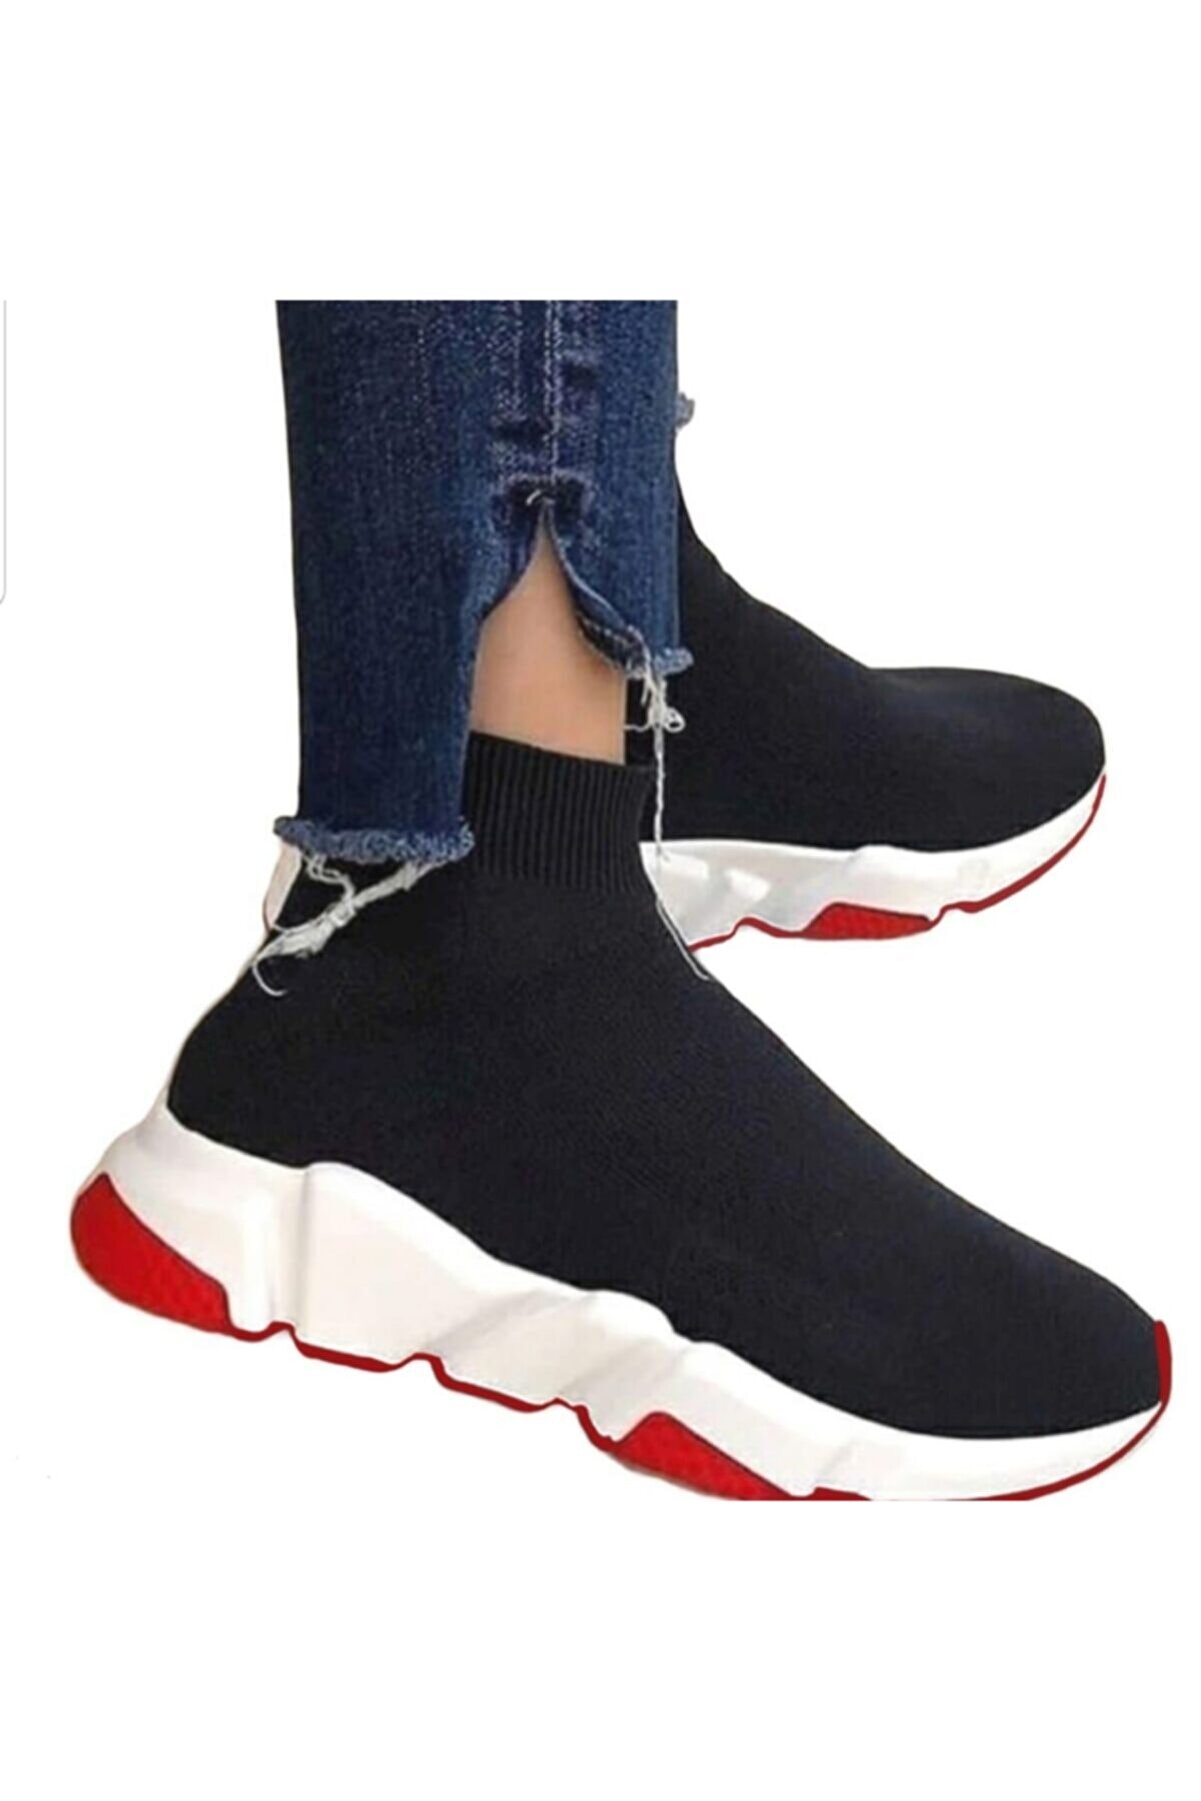 MİRKET Unisex Siyah Çoraplı Kırmızı Beyaz Taban Sneakers Ayakkabı